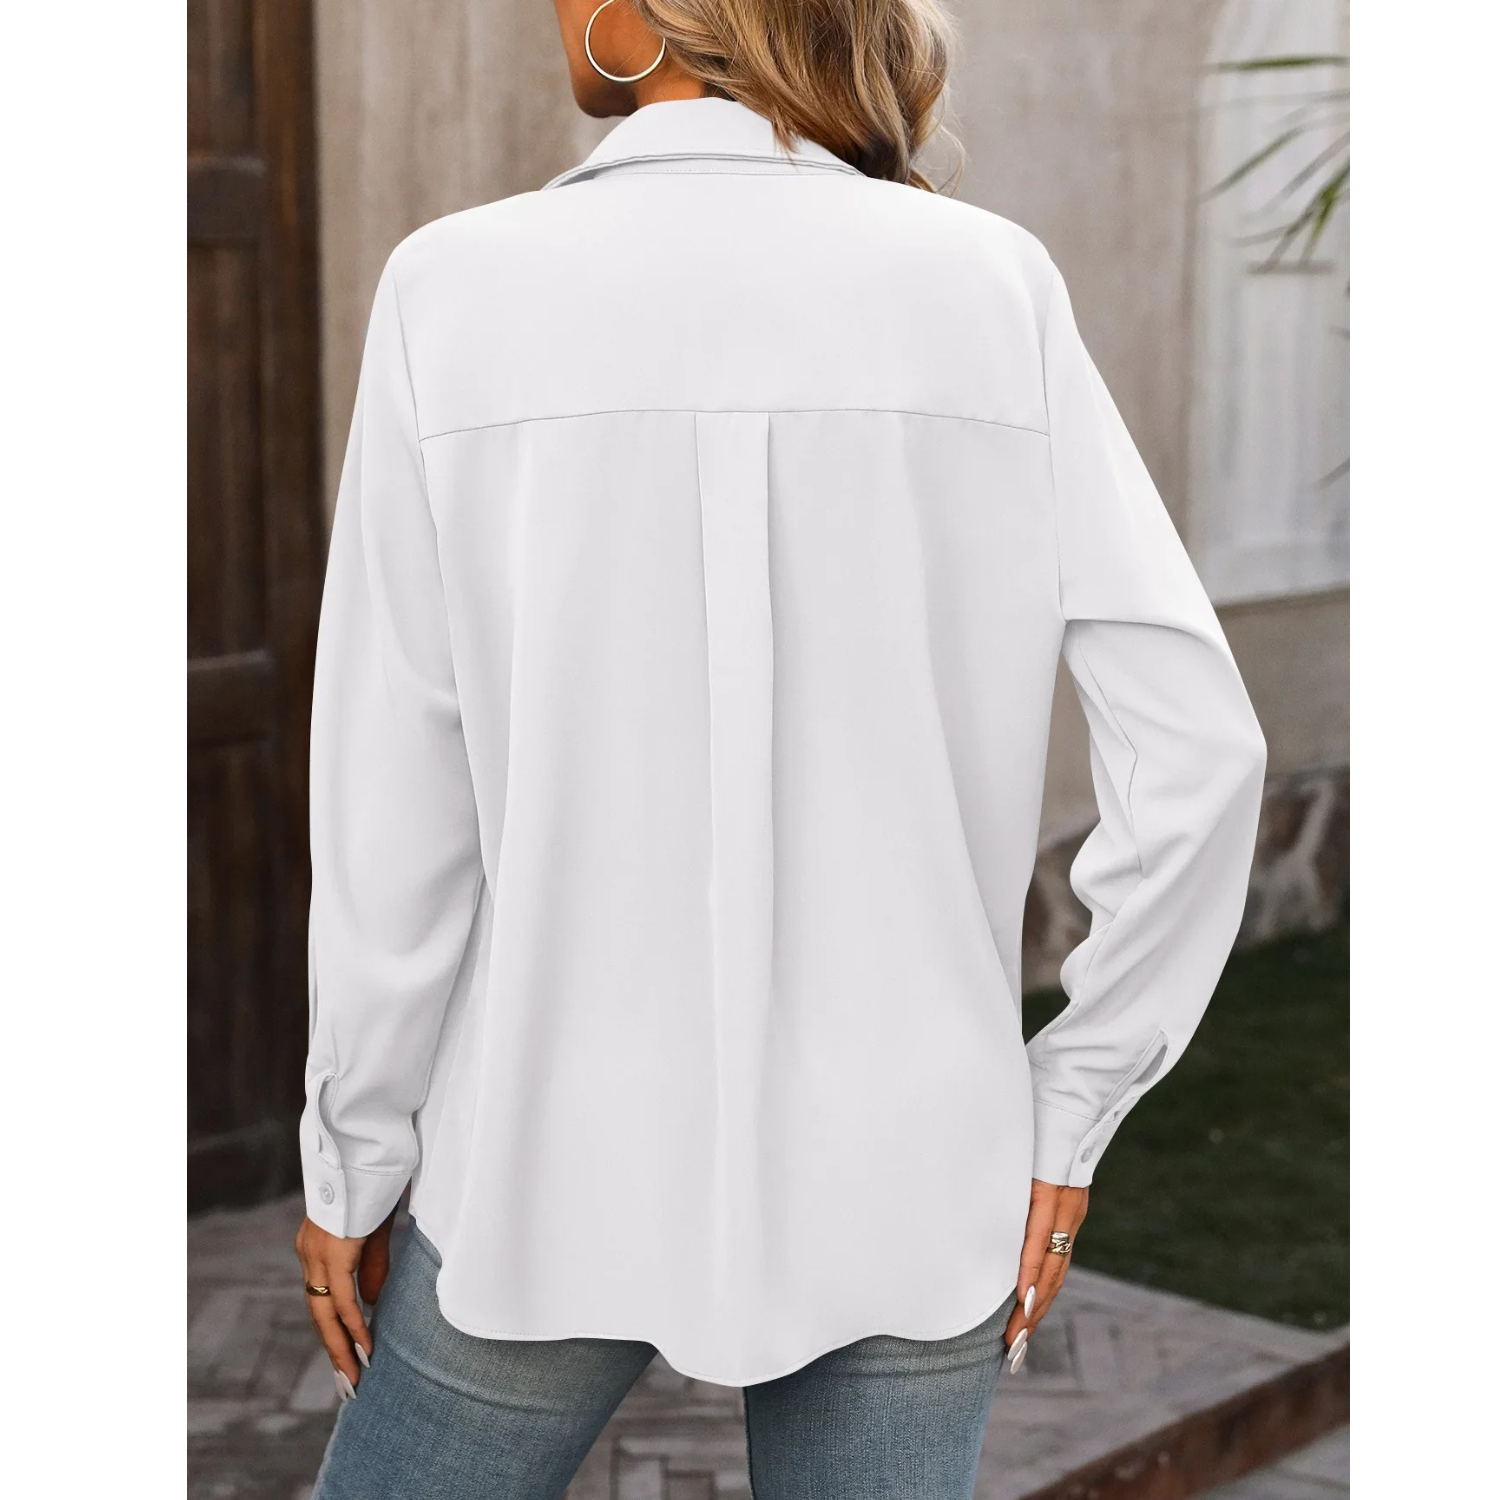 Eenvoudig fleece damesshirt met lange mouwen en omslagkraag